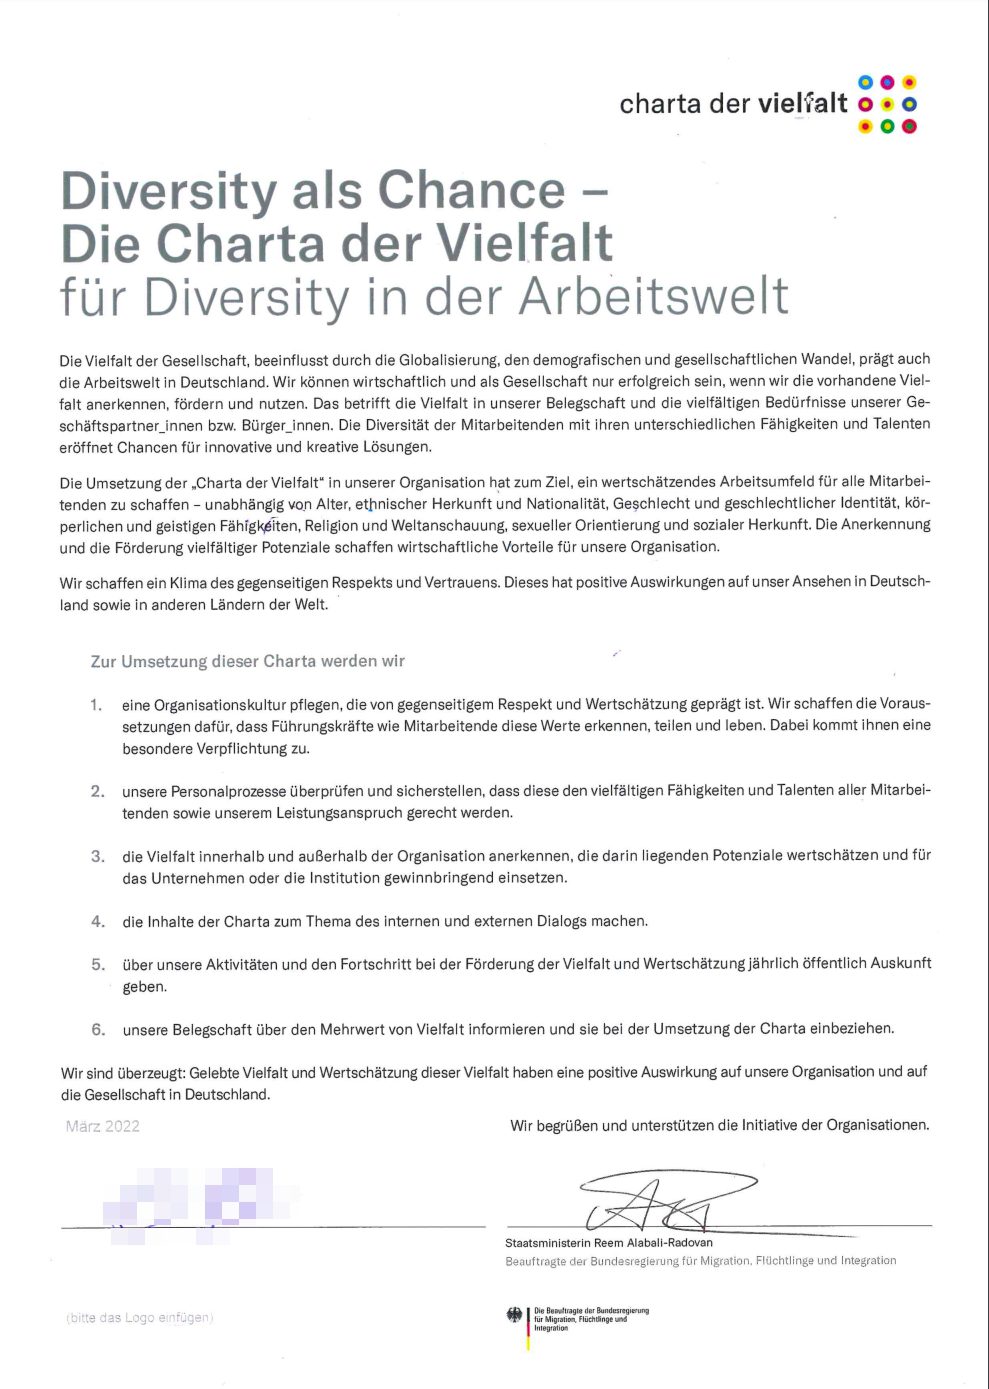 Charta der Vielfalt - Urkunde mit Absichtserklärung